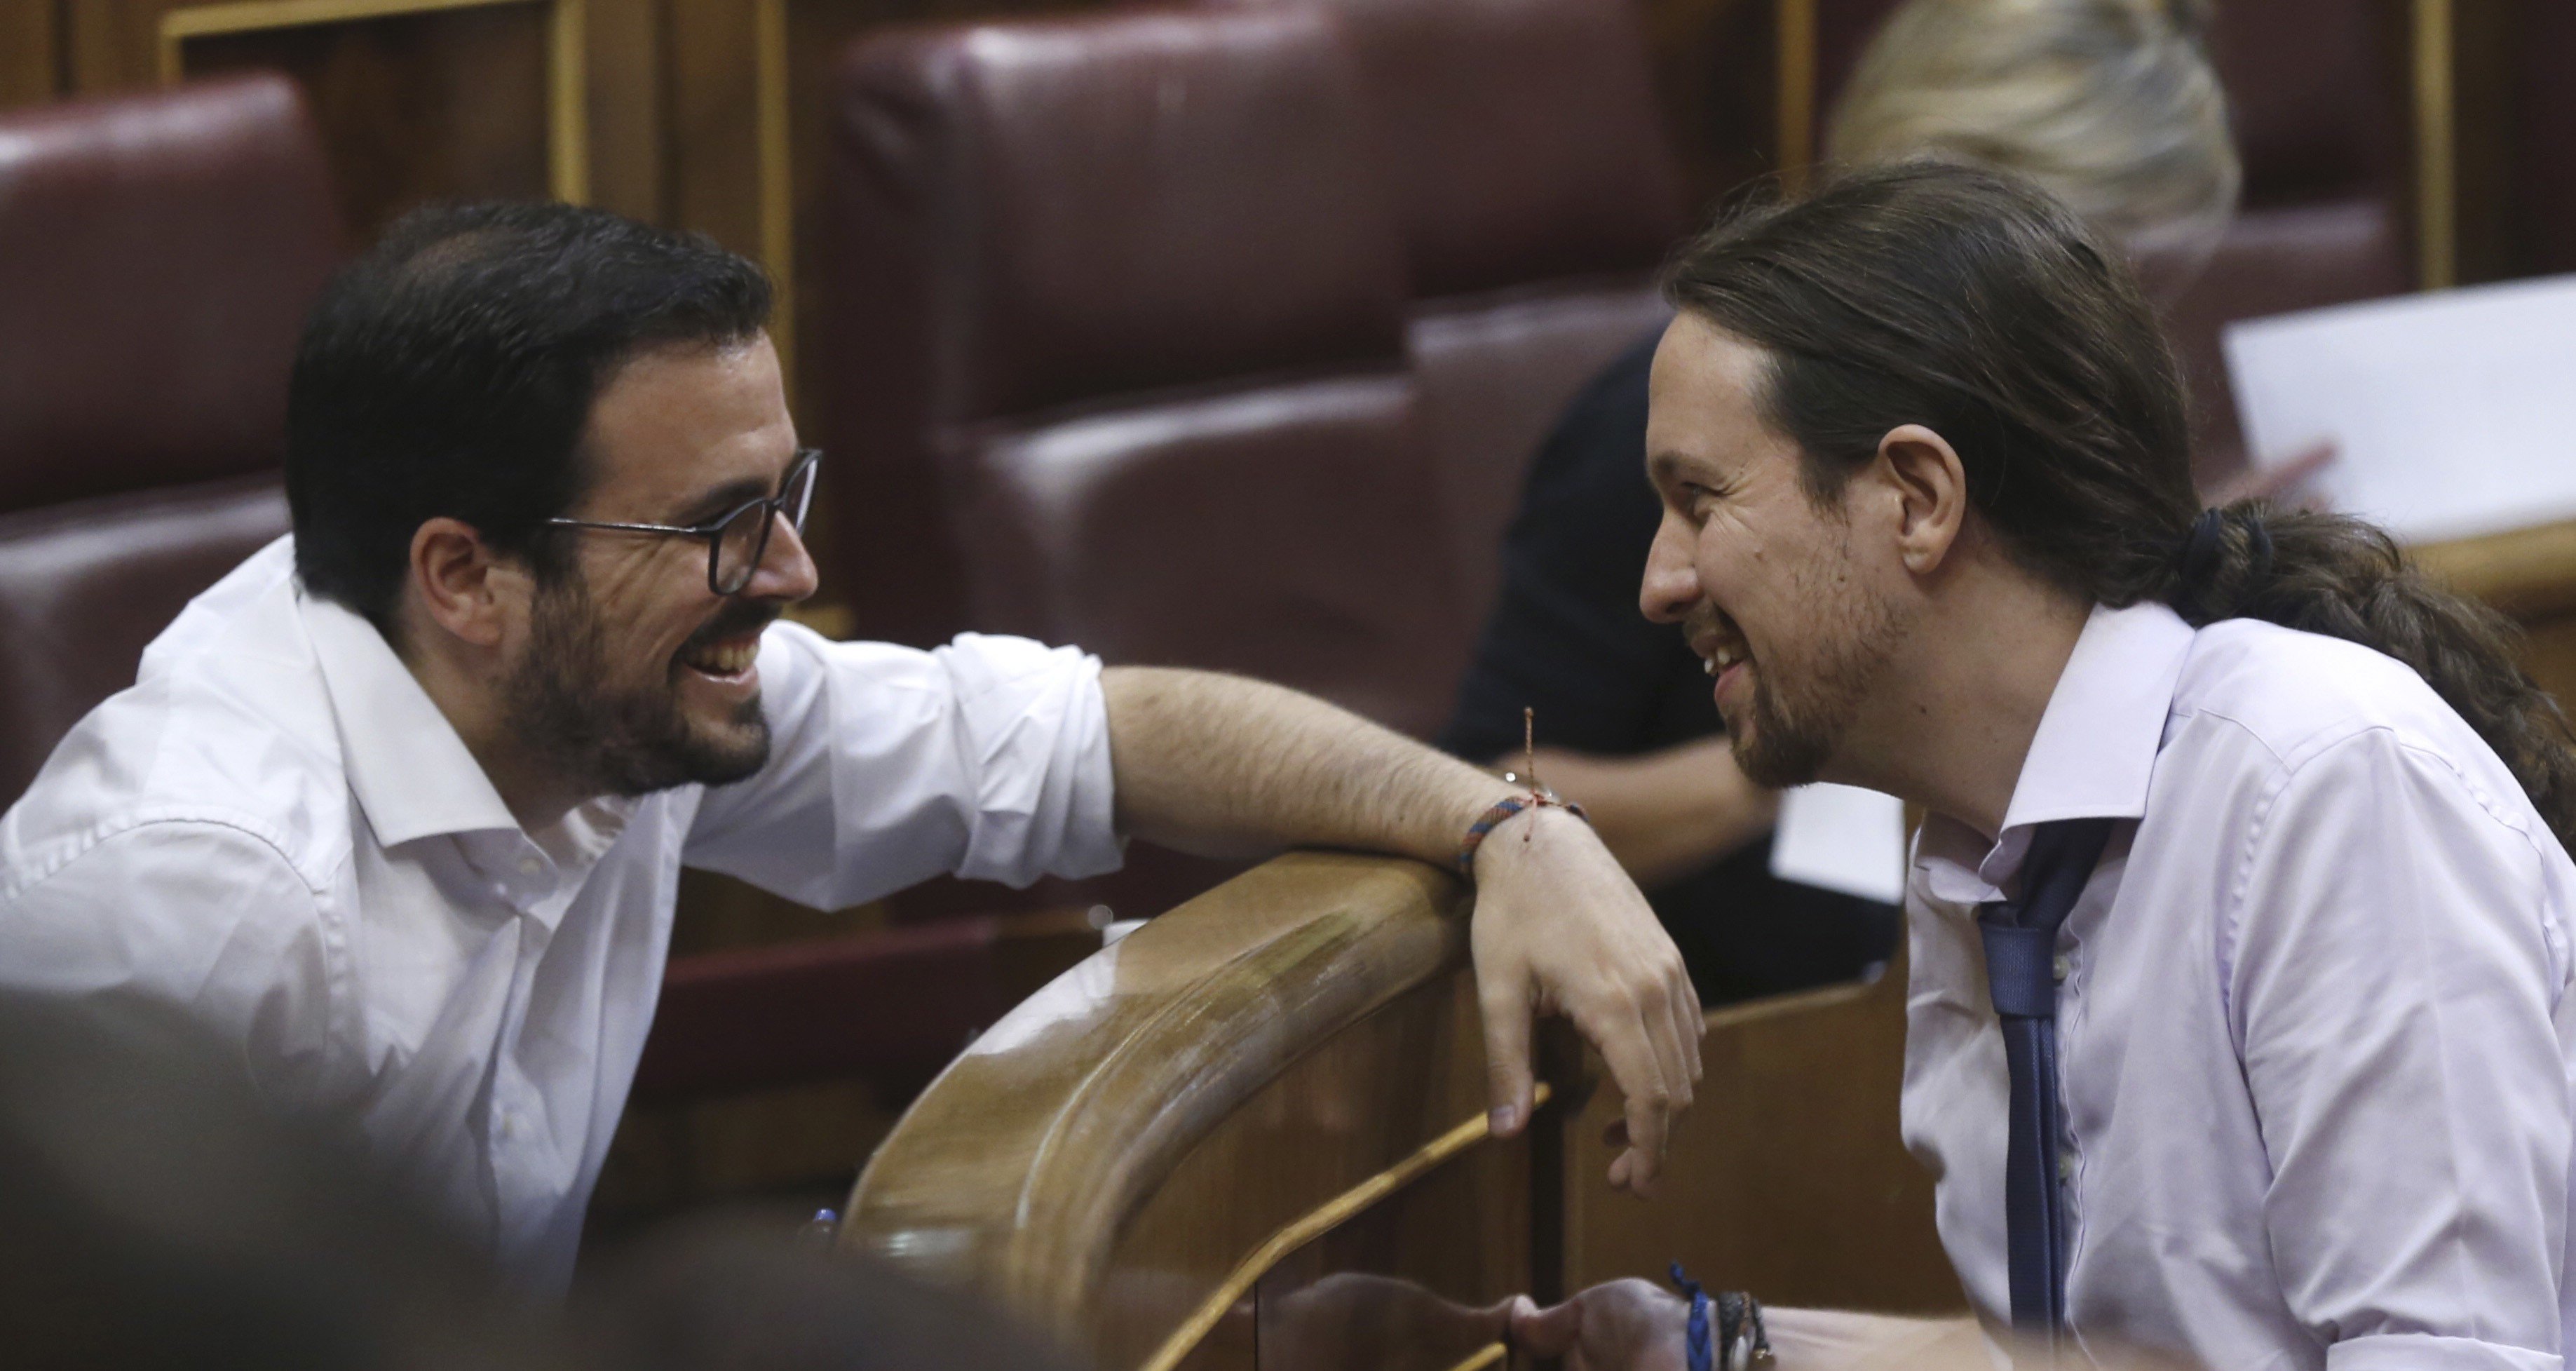 El 1-O divide a Podemos y cuestiona su "plurinacionalidad"